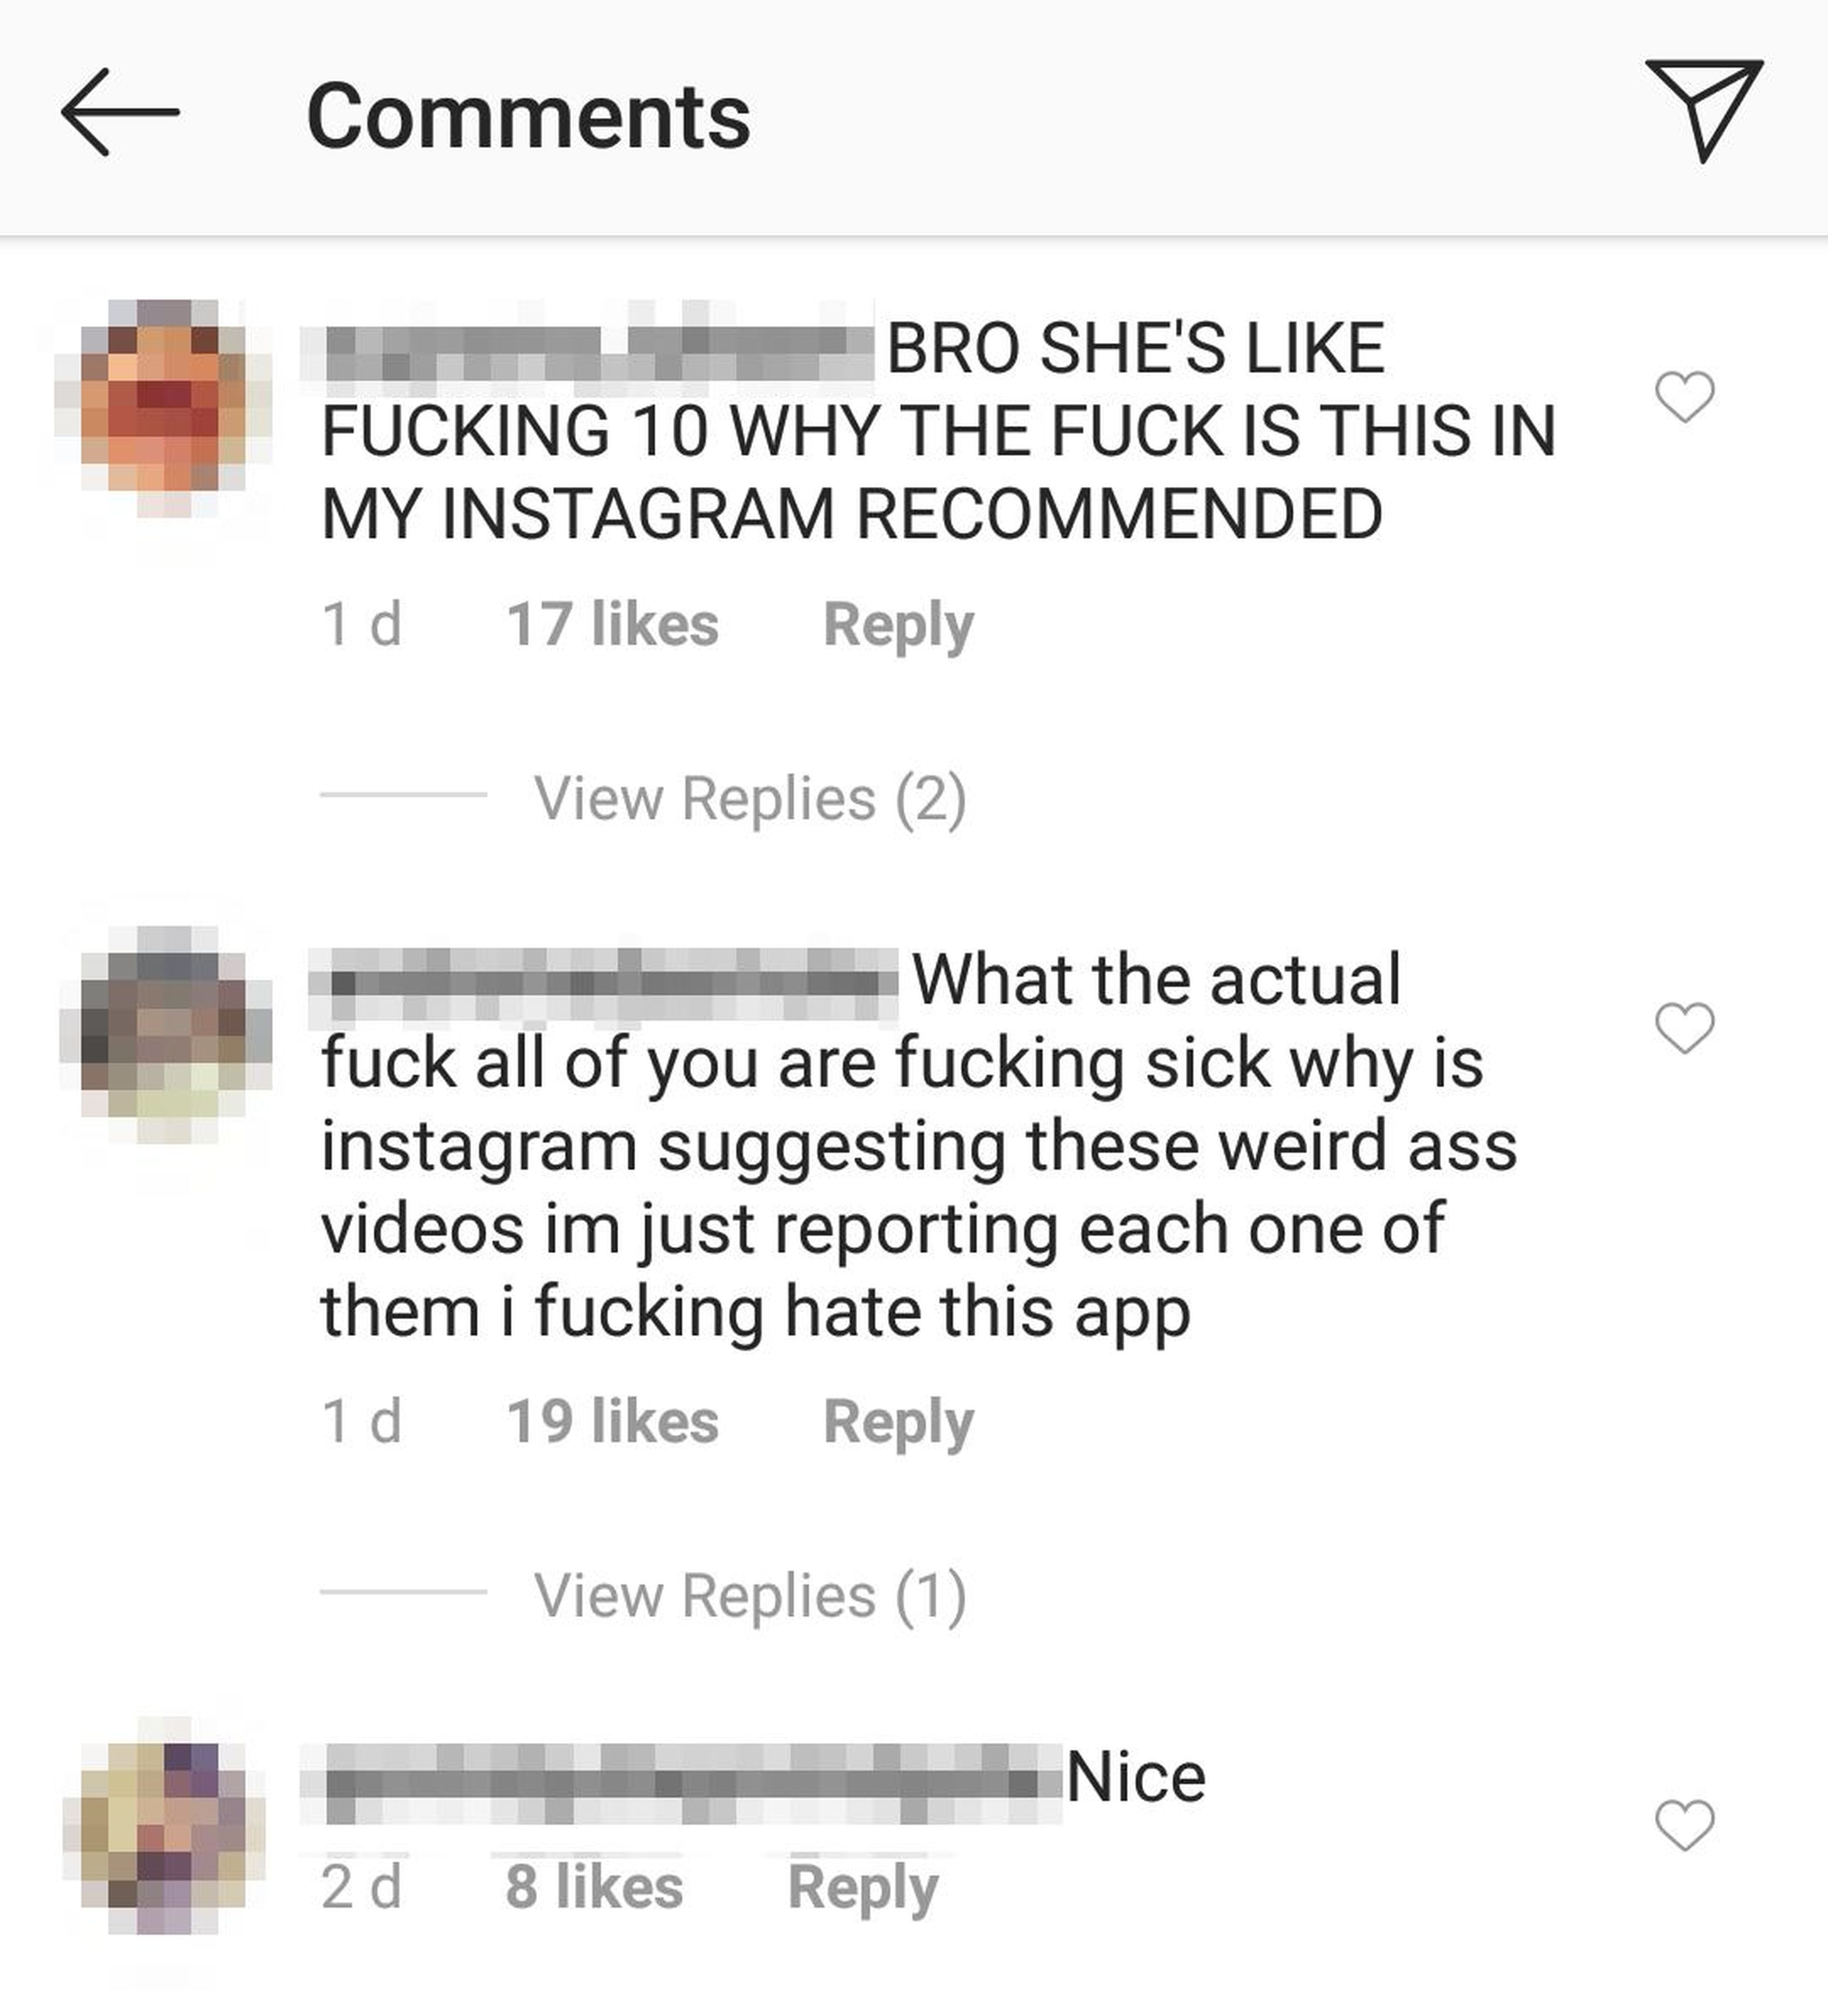 Comentarios en el vídeo "Hot Girl Follow Me".